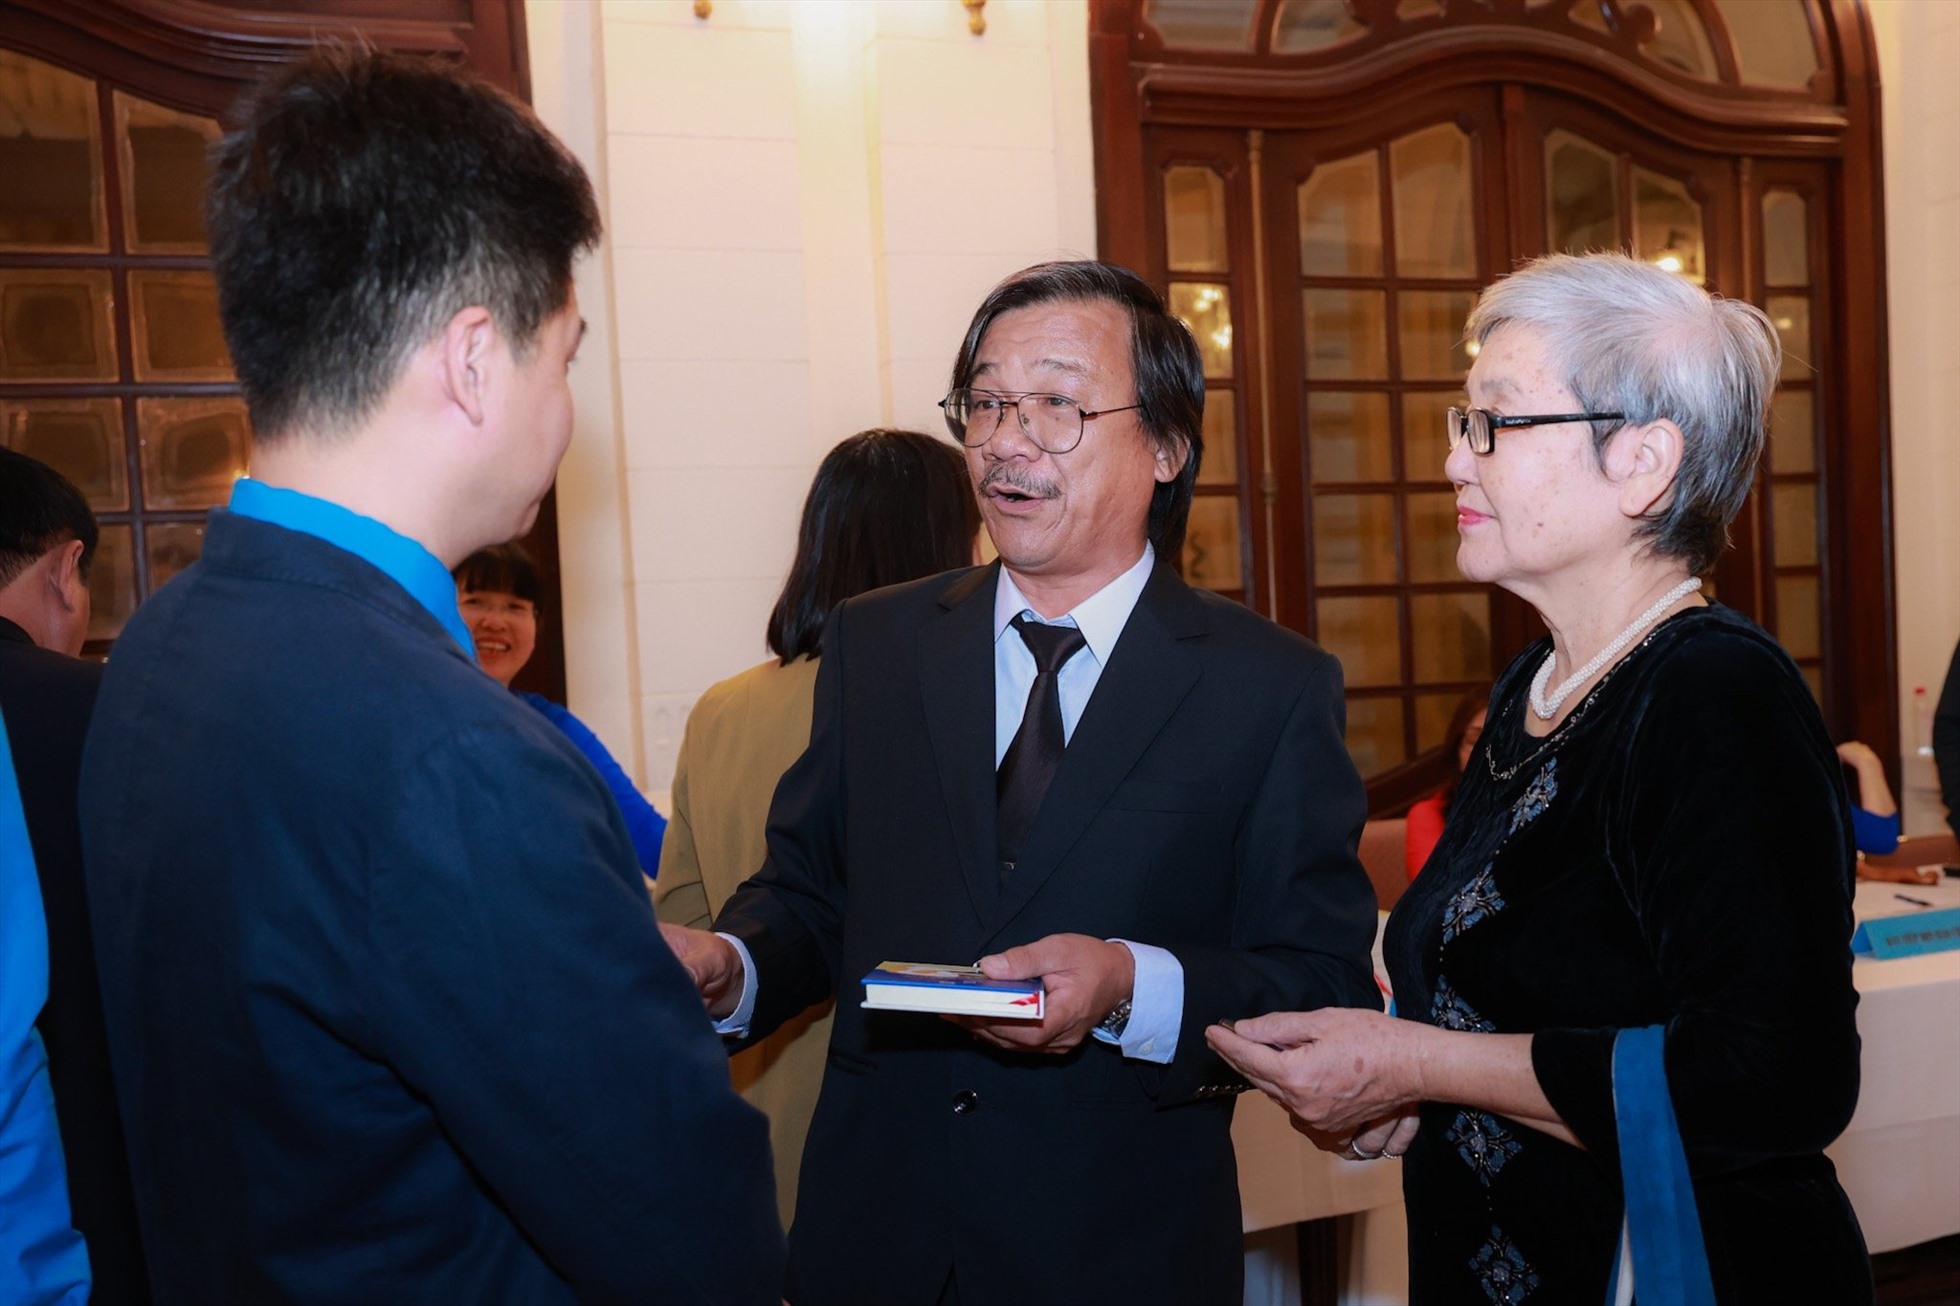 Nhà thơ, nhà văn Hoàng Việt Hằng (ngoài cùng, phải) trò chuyện trước thềm lễ trao giải. Ảnh: Hải Nguyễn